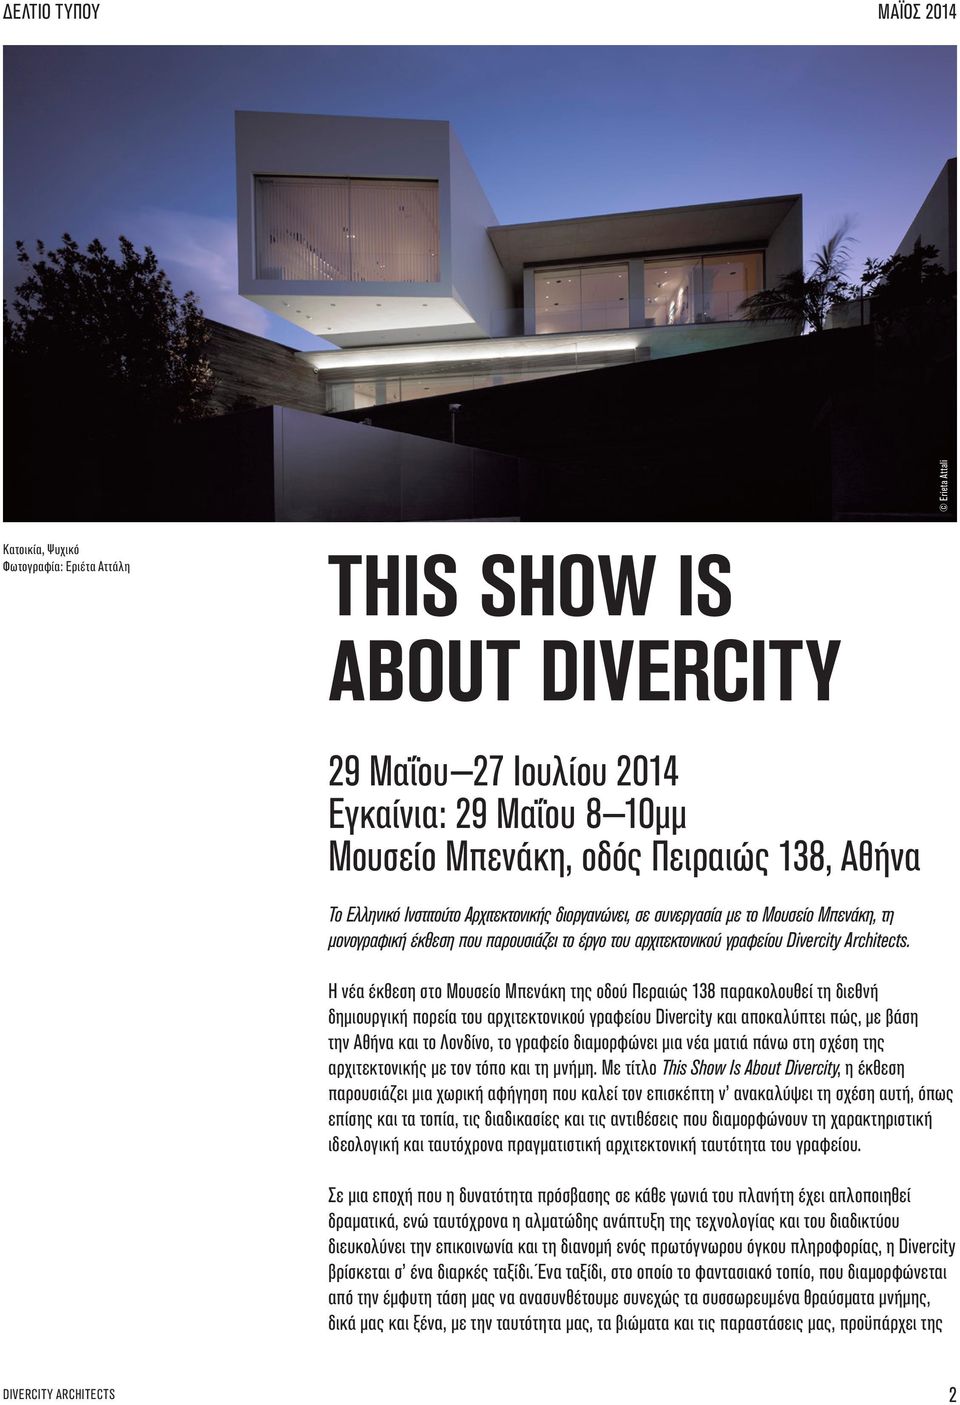 Η νέα έκθεση στο Μουσείο Μπενάκη της οδού Περαιώς 138 παρακολουθεί τη διεθνή δημιουργική πορεία του αρχιτεκτονικού γραφείου Divercity και αποκαλύπτει πώς, με βάση την Αθήνα και το Λονδίνο, το γραφείο